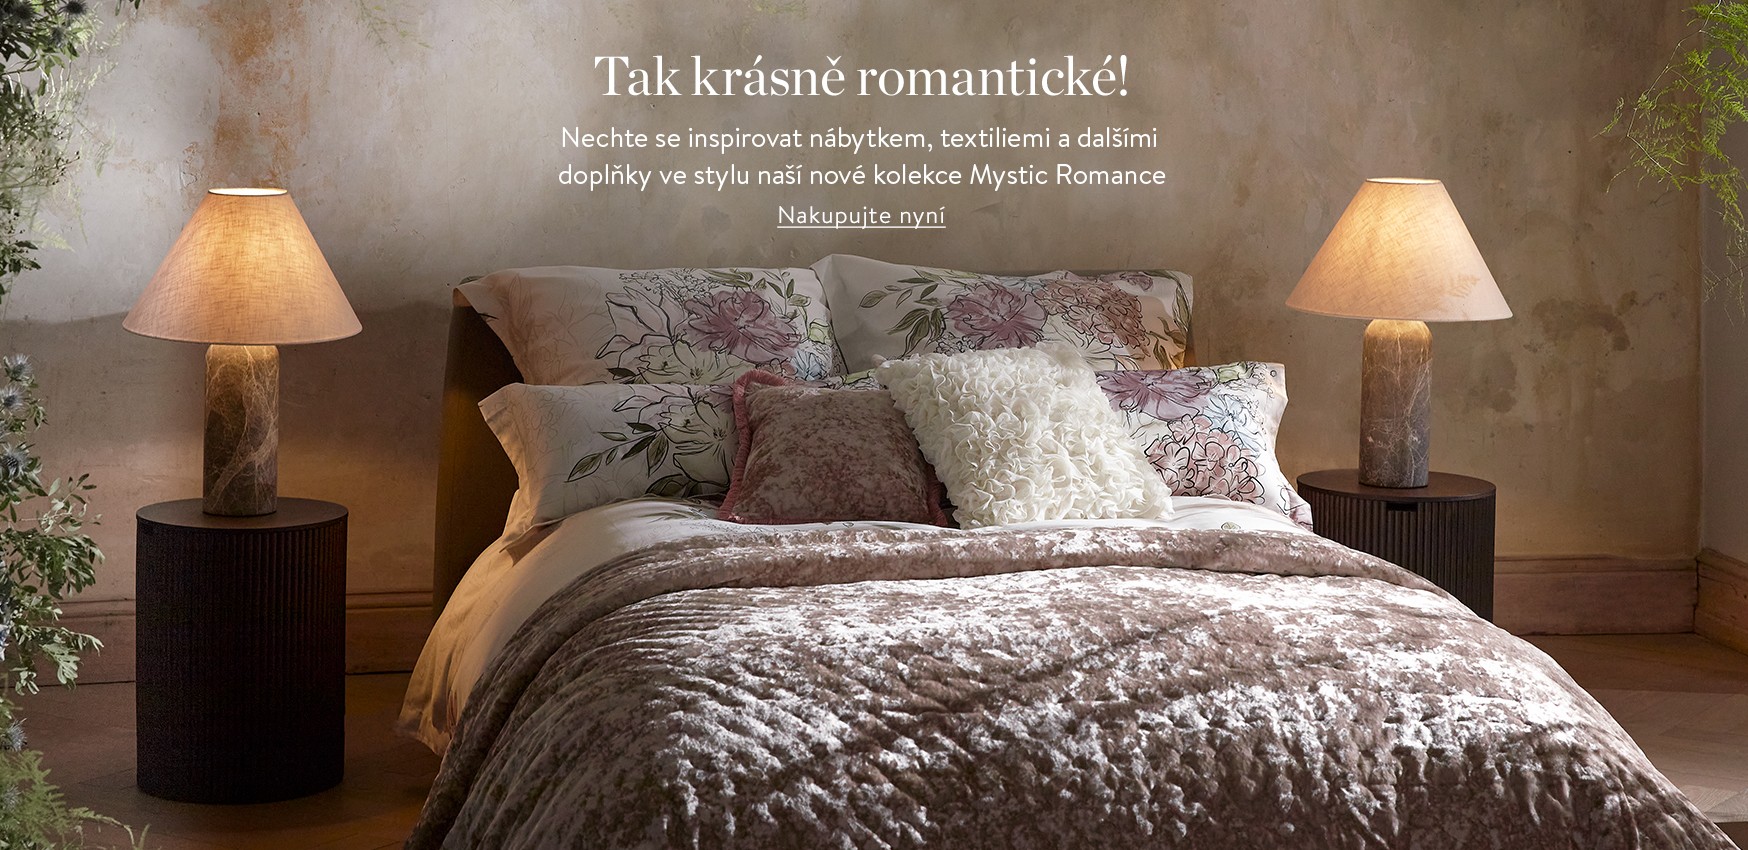 Tak krásně romantické! Nechte se inspirovat nábytkem, textiliemi a dalšími doplňky ve stylu naší nové kolekce Mystic Romance.